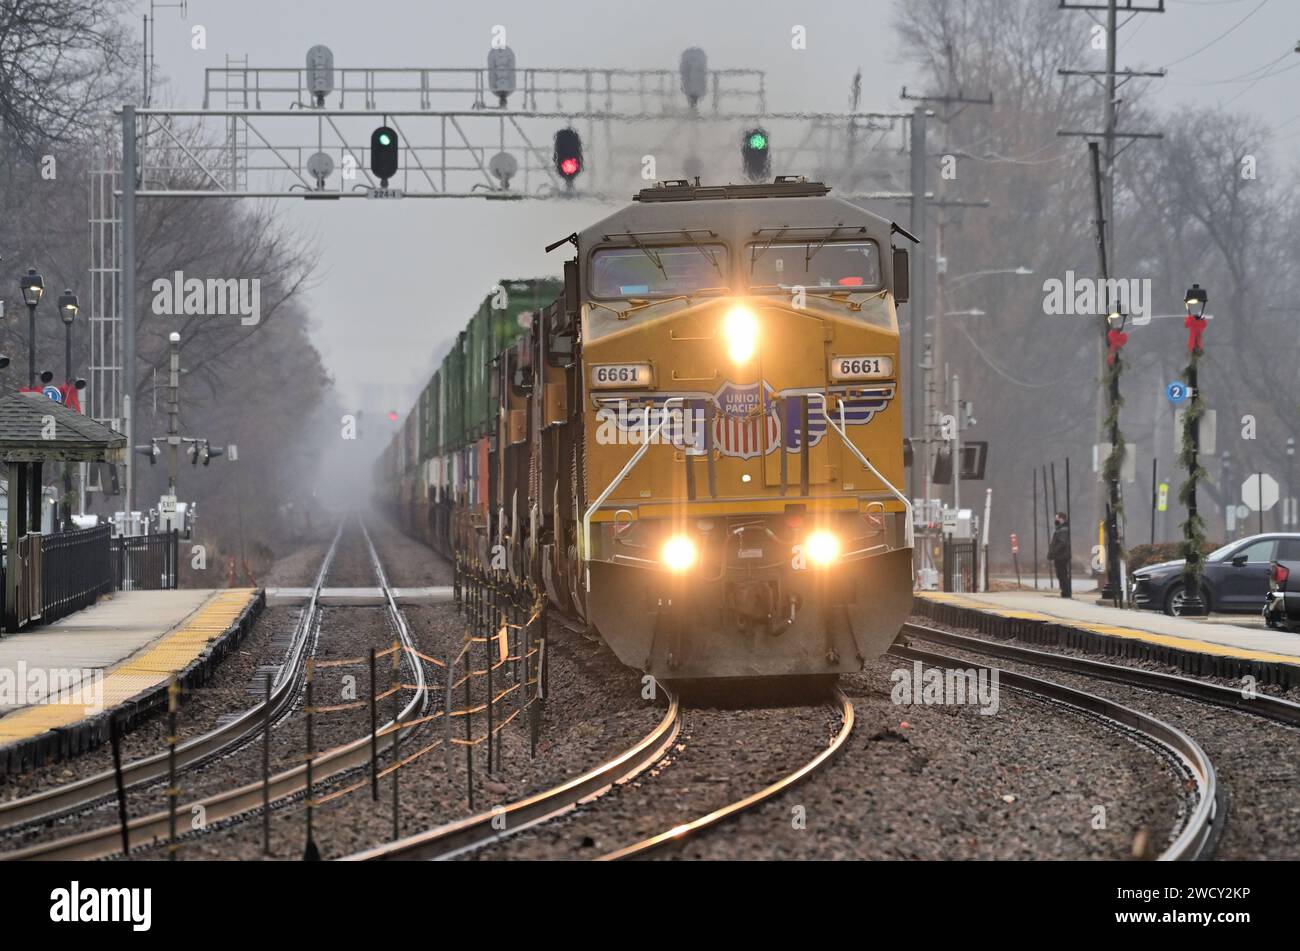 Glen Ellyn, Illinois, USA. An einem nebeligen Tag, ein paar Tage vor Weihnachten, führen mehrere Lokomotiven einen Güterzug der Union Pacific. Stockfoto